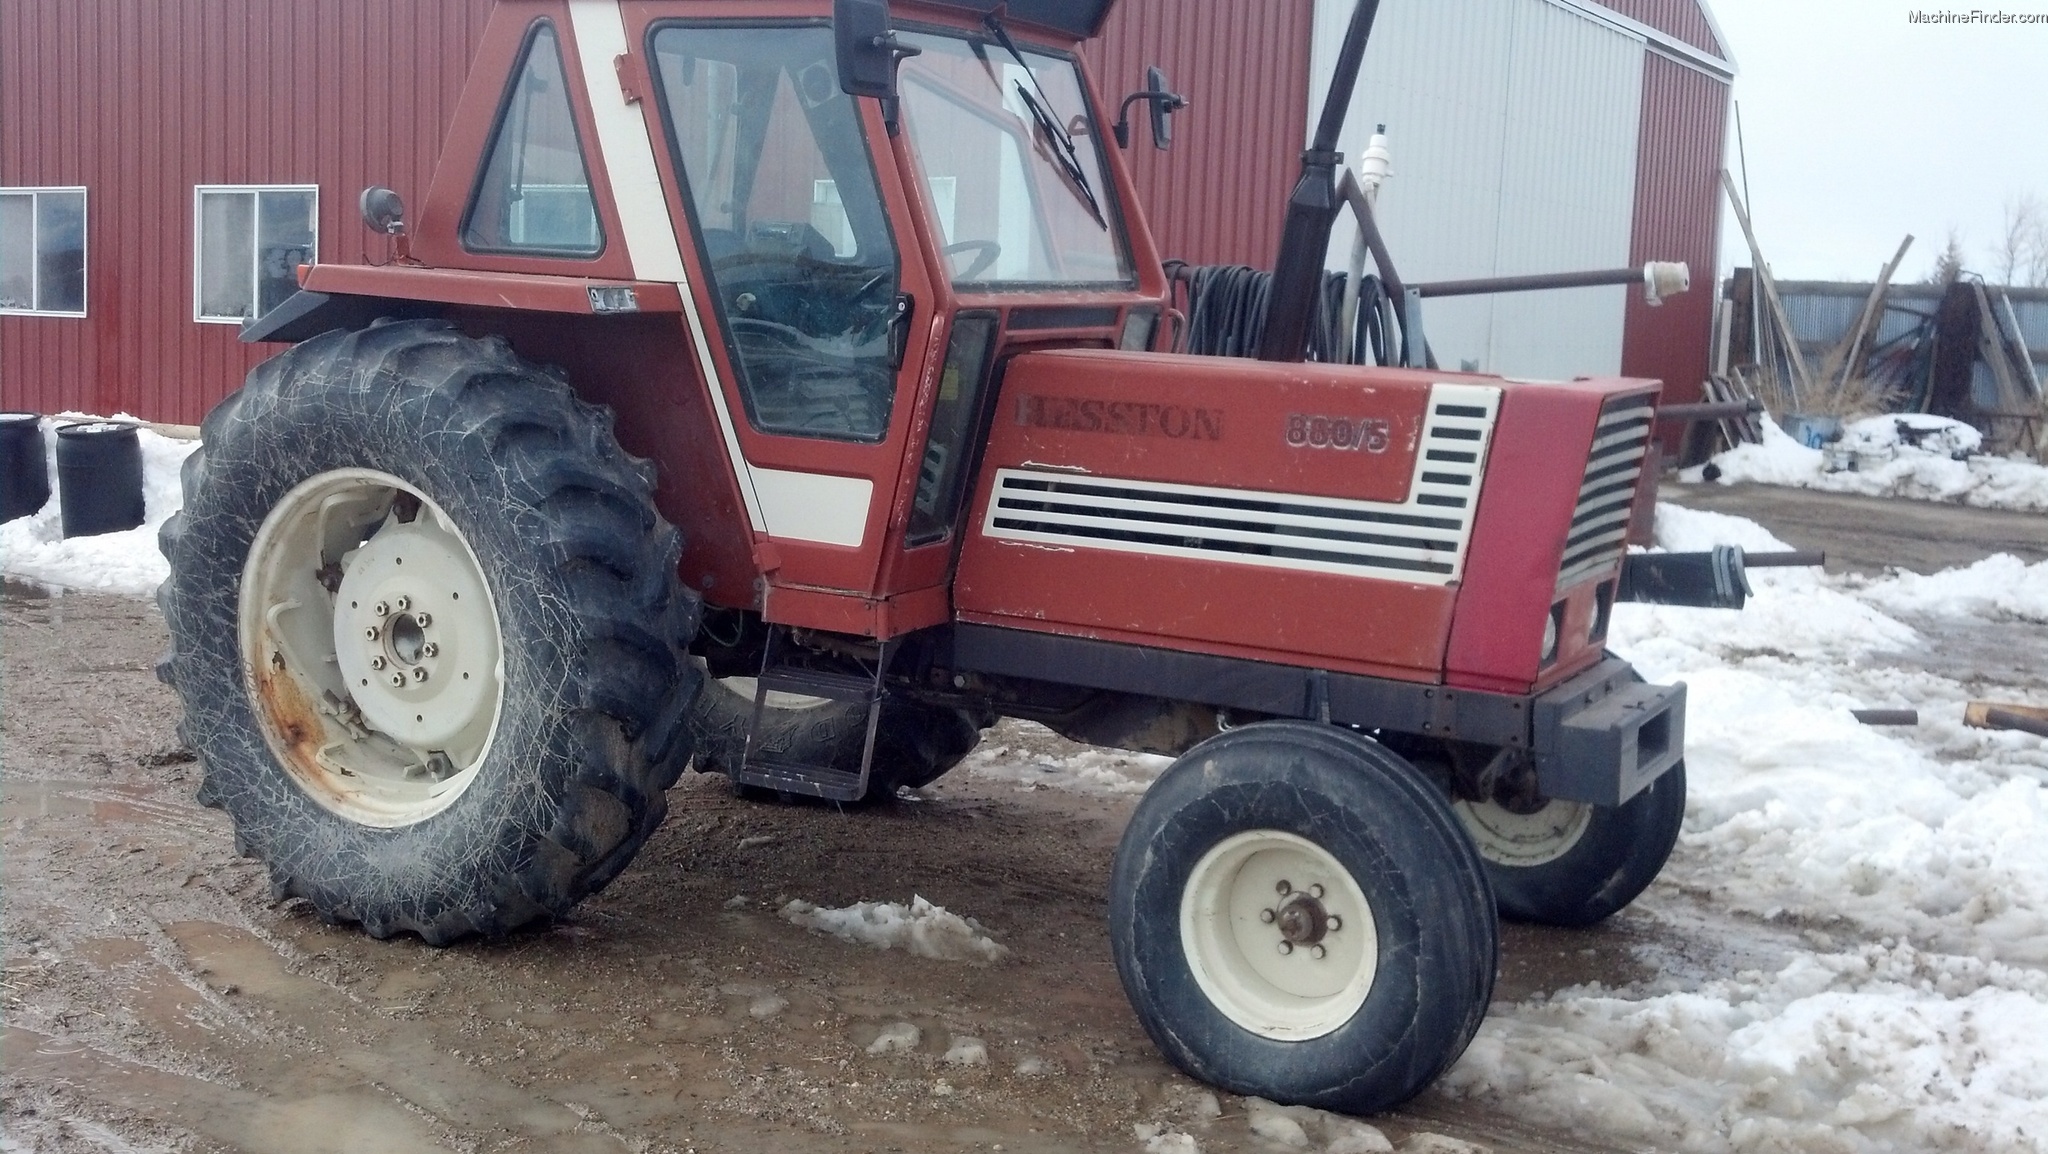 1983 Hesston 880-5 Tractors - Row Crop (+100hp) - John Deere MachineFinder